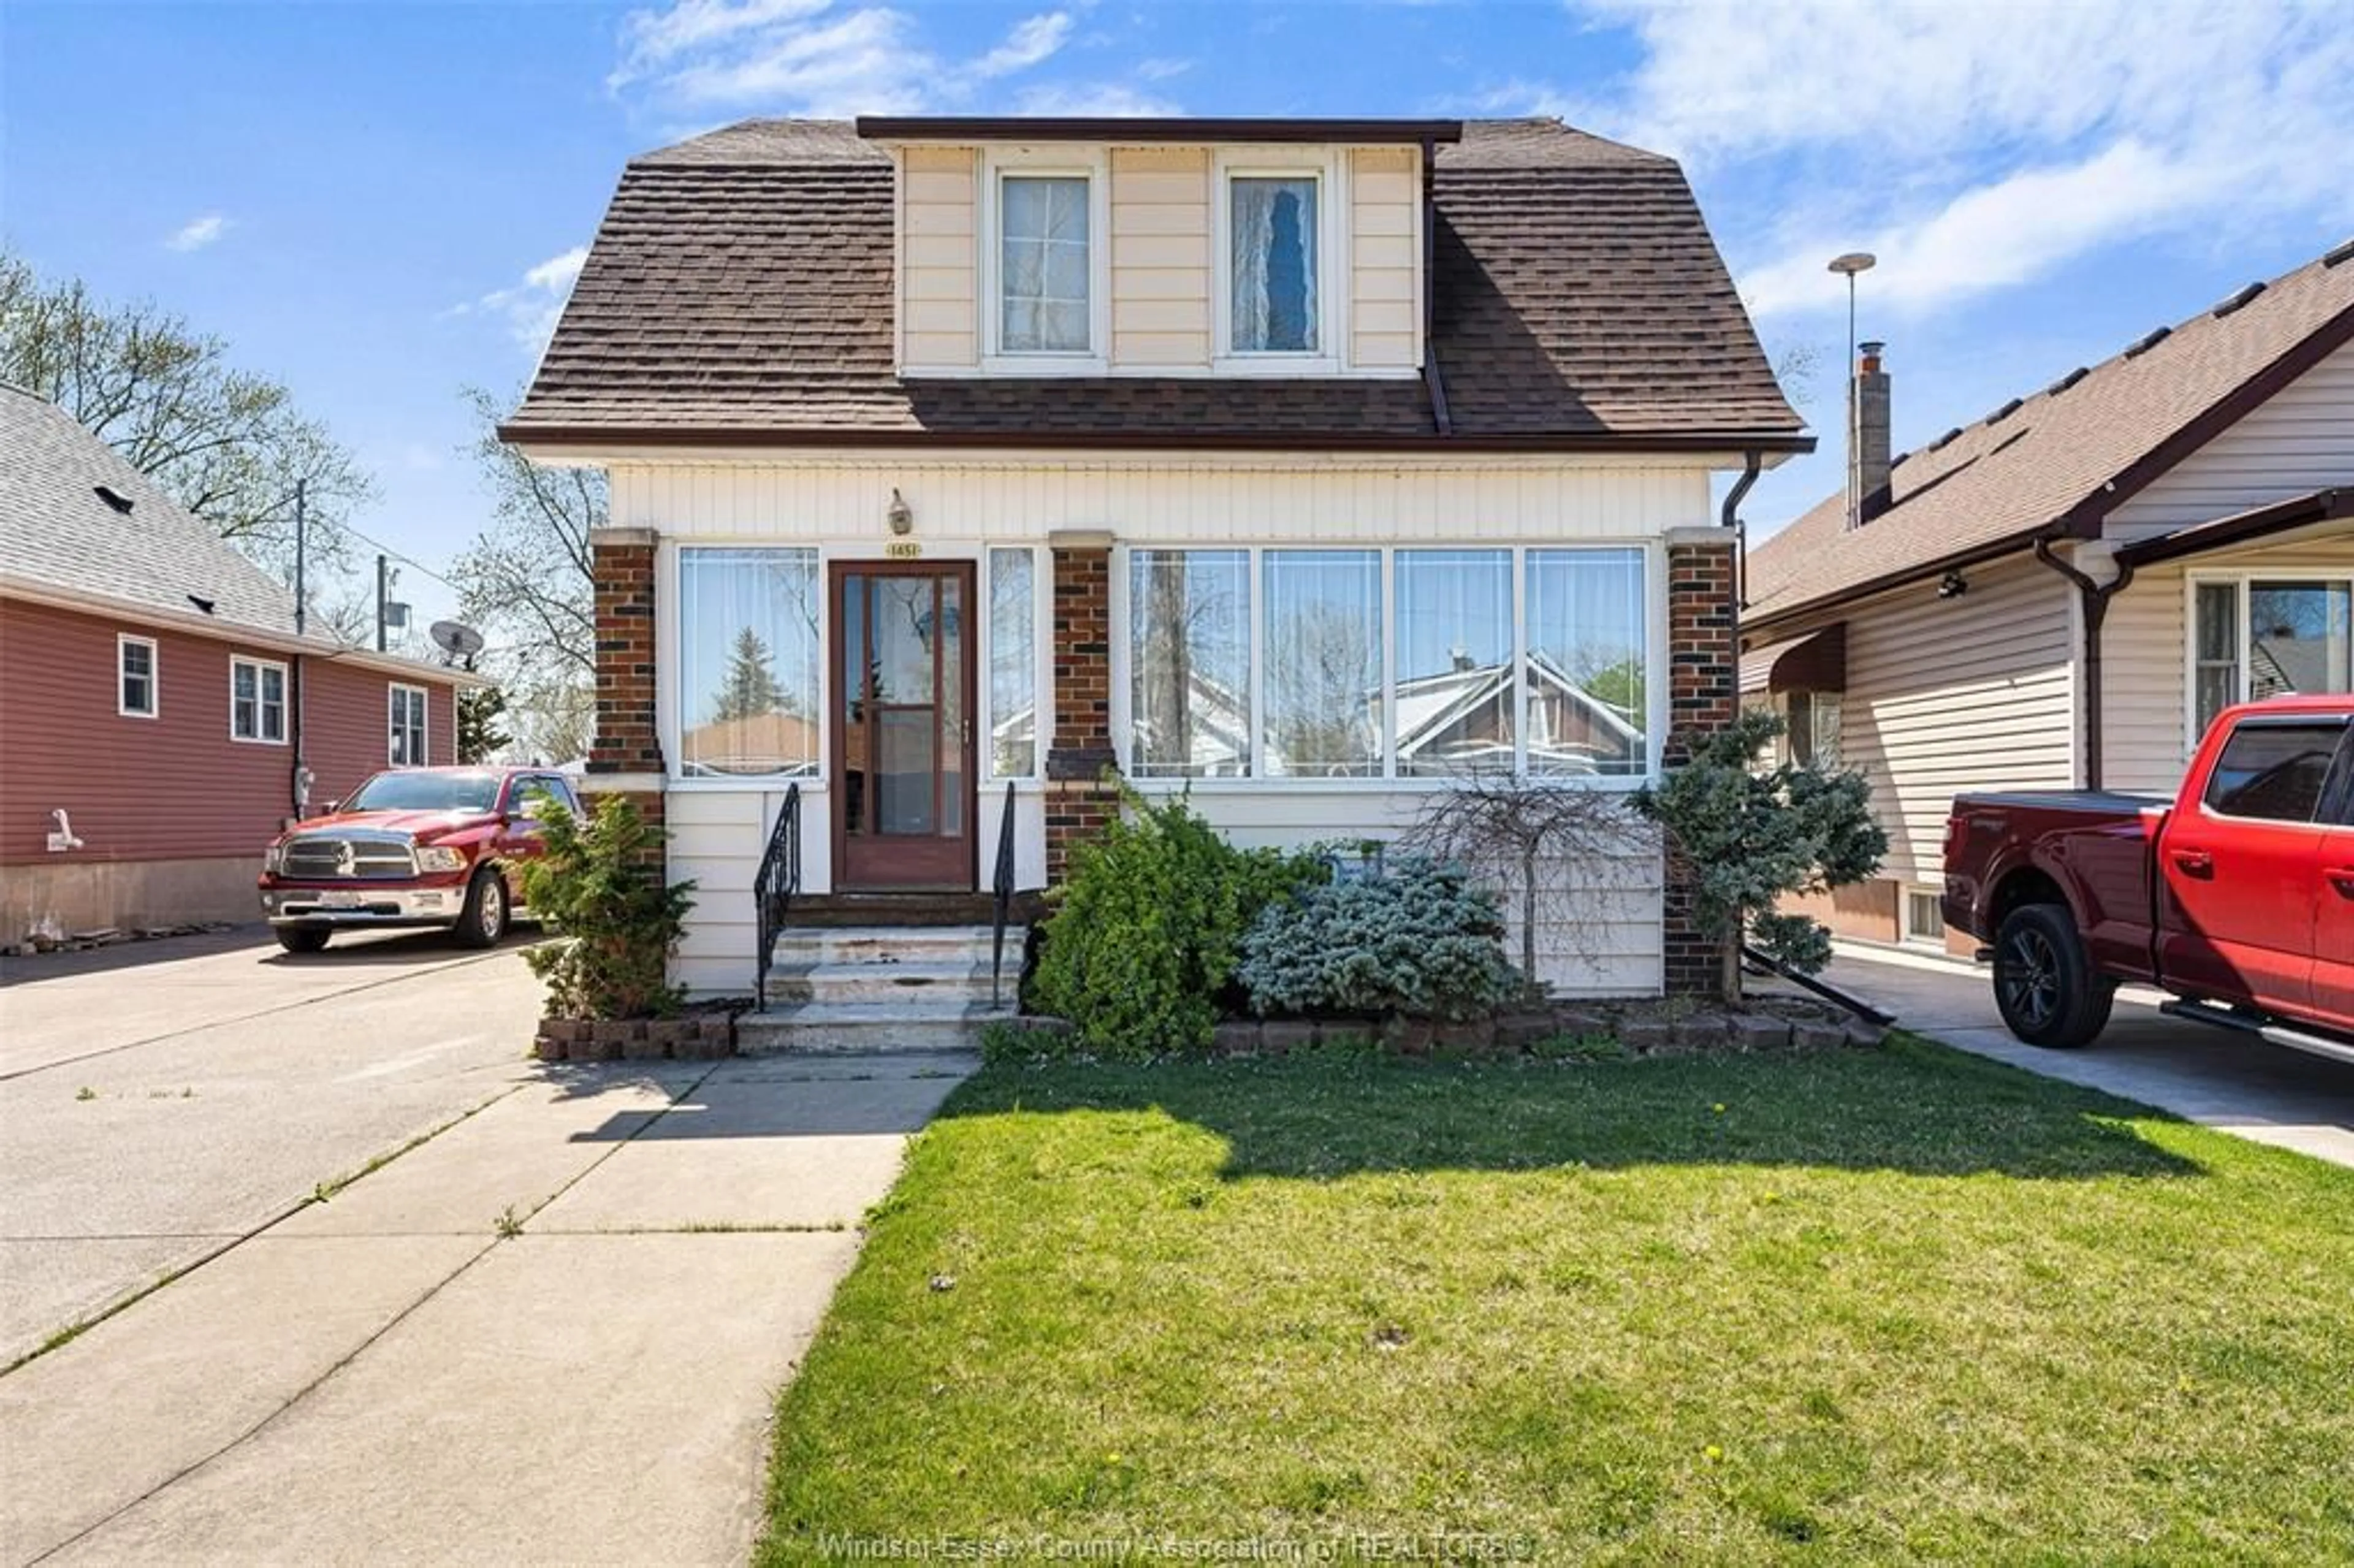 Frontside or backside of a home for 1451 BERNARD, Windsor Ontario N8Y 4K4